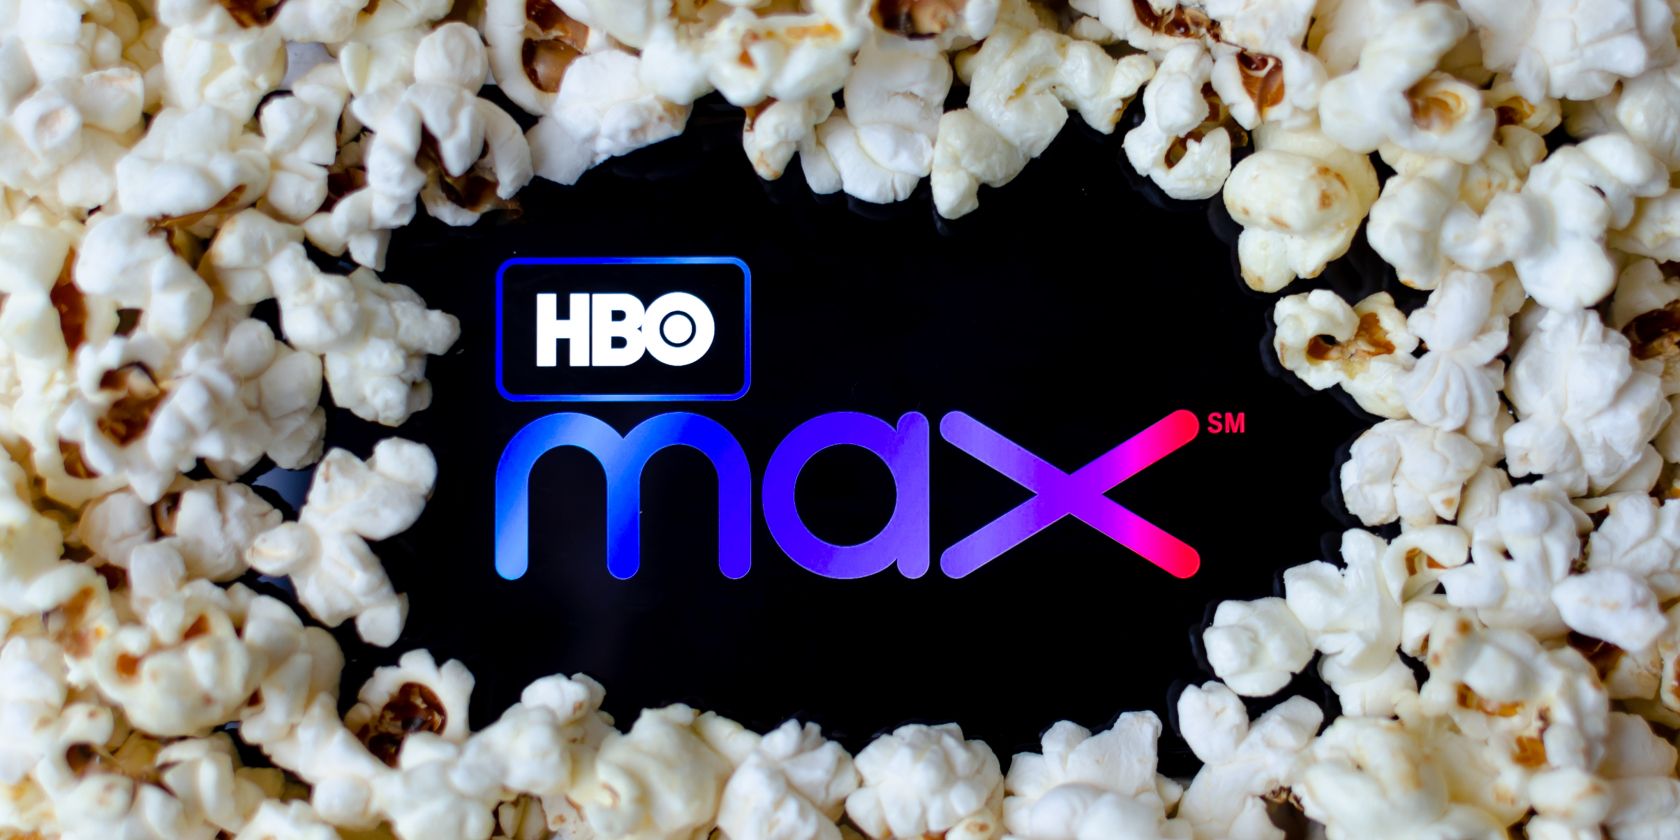 hbo max logo in popcorn